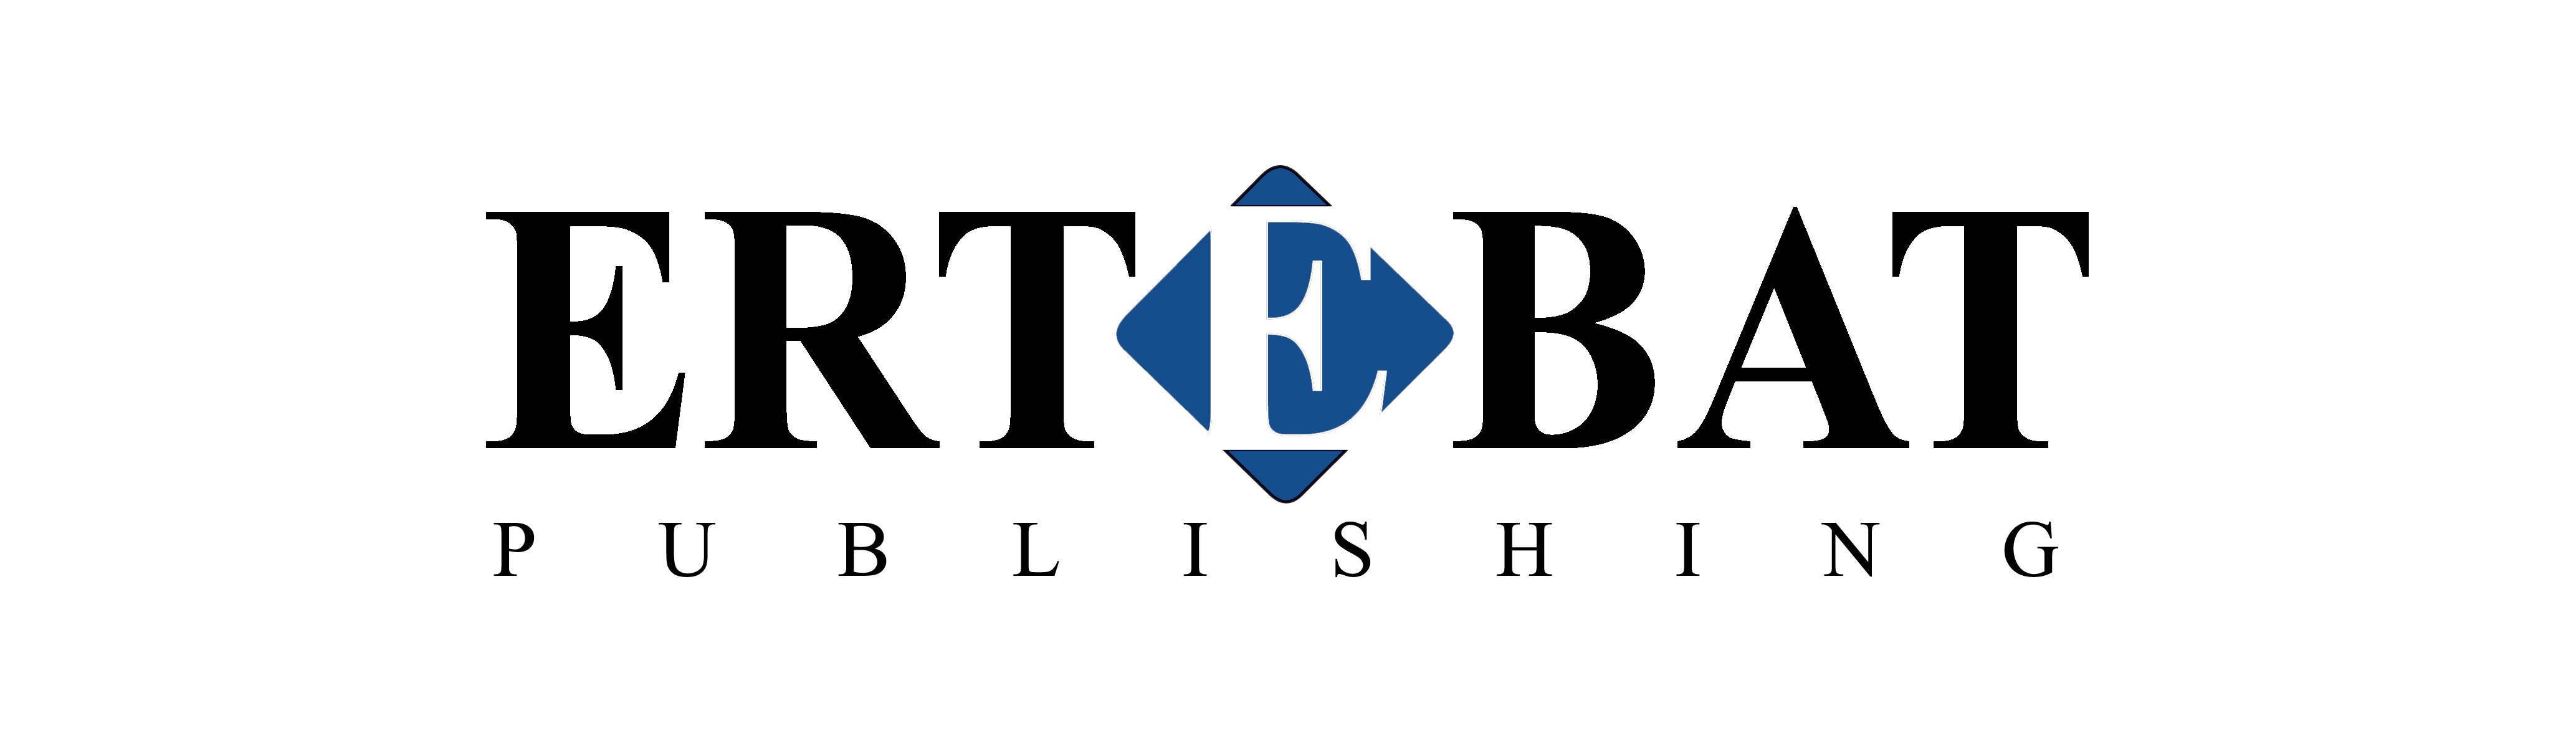 Ertebat Publishing FZ LLC Logo